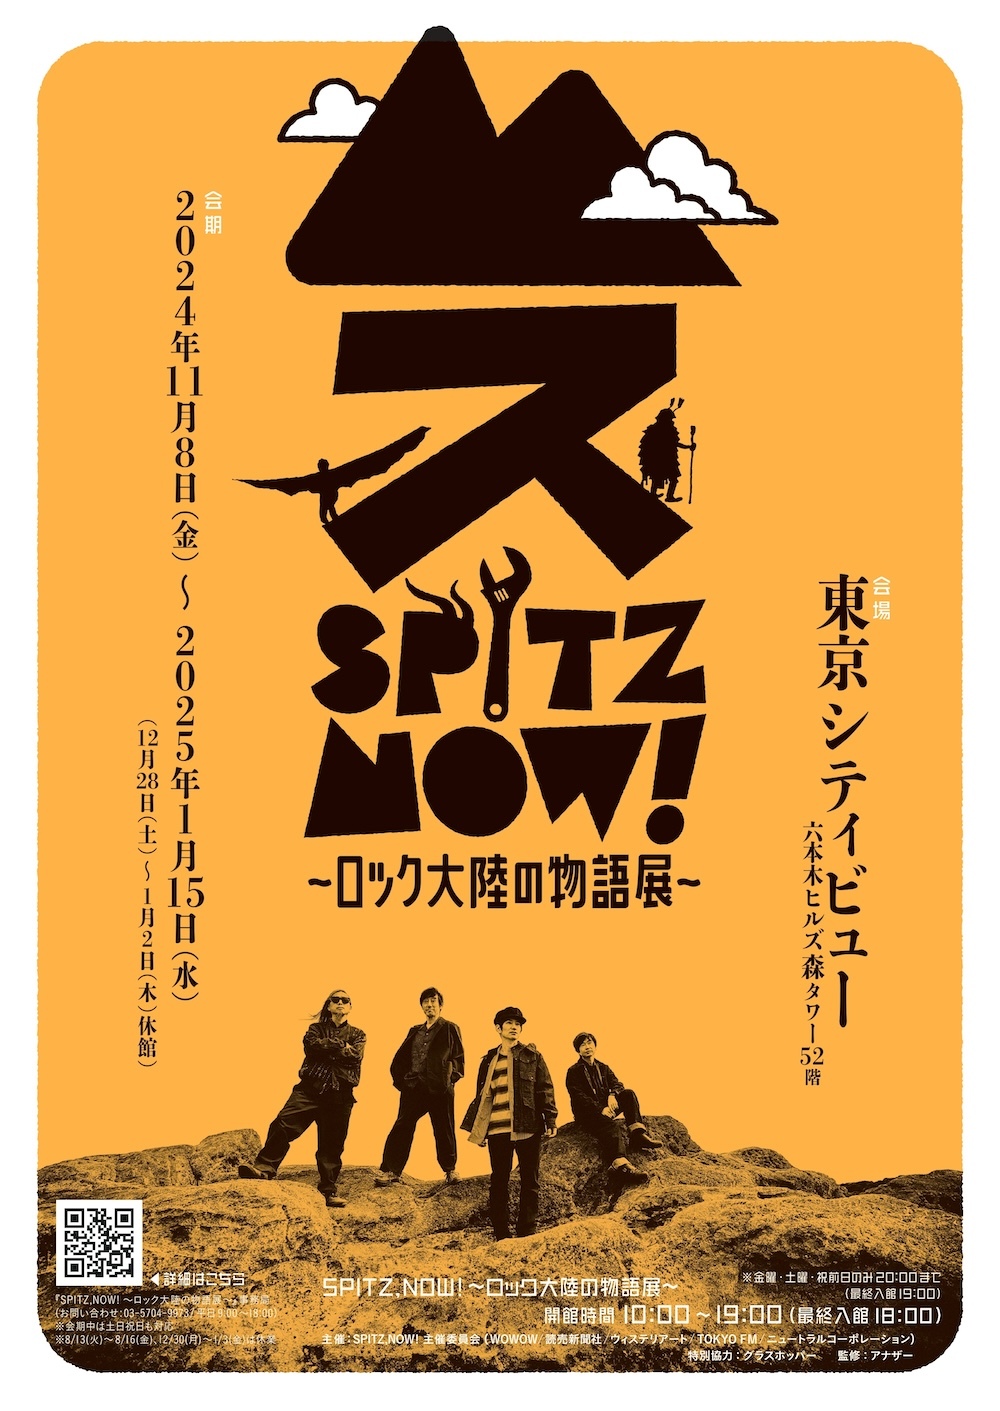 『SPITZ,NOW! 〜ロック大陸の物語展〜』